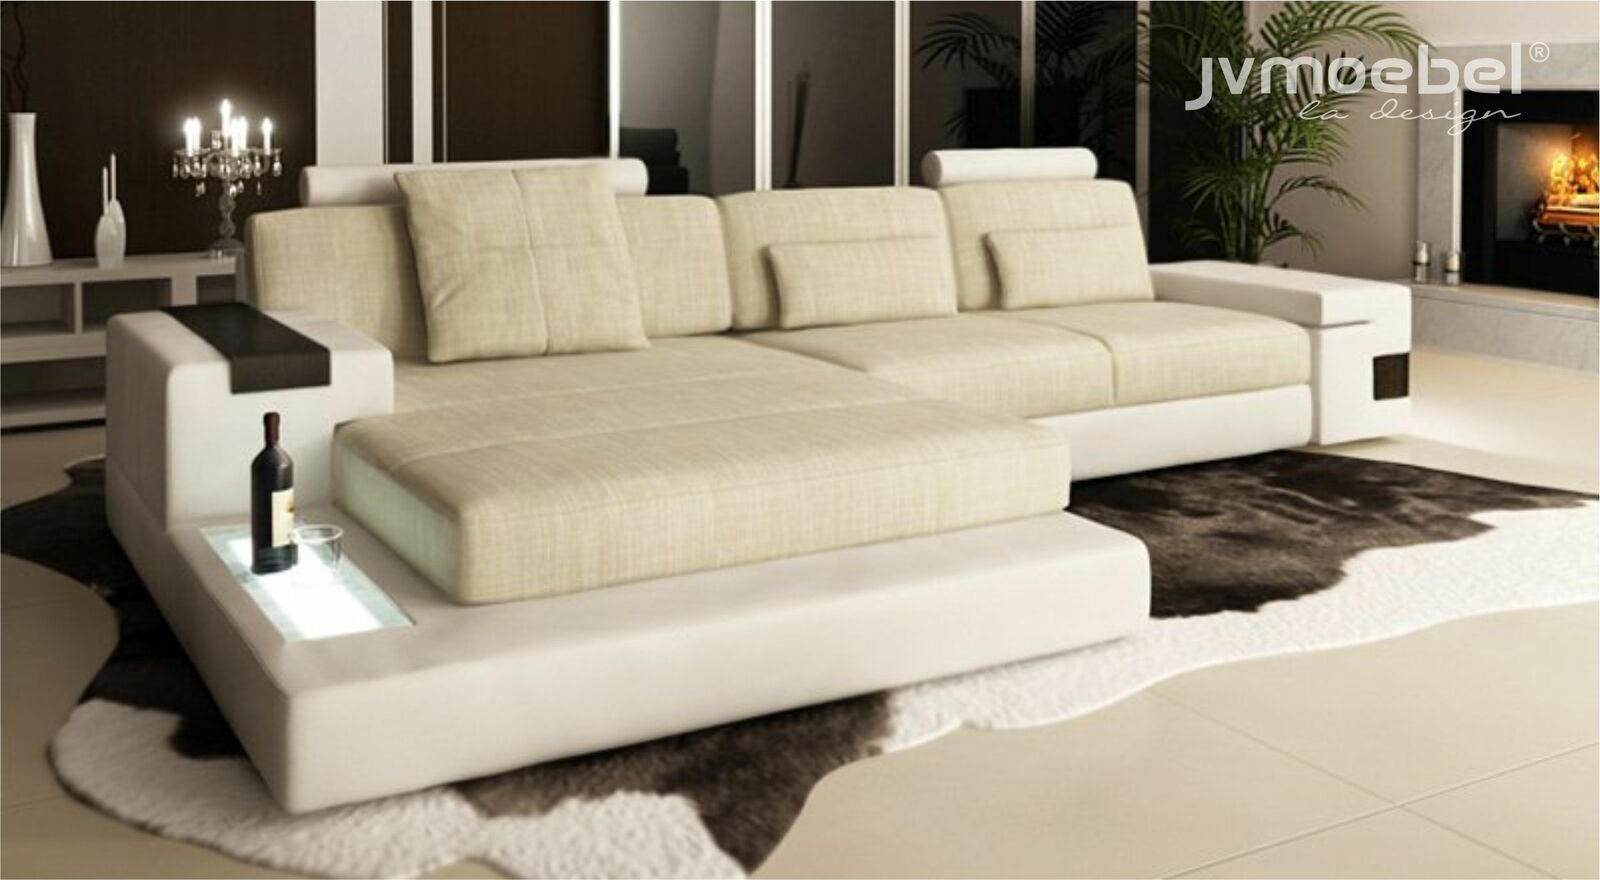 JVmoebel Ecksofa, L-form Bettfunktion Couch Leder Sofas Couchen Schlaf Sofa Textil